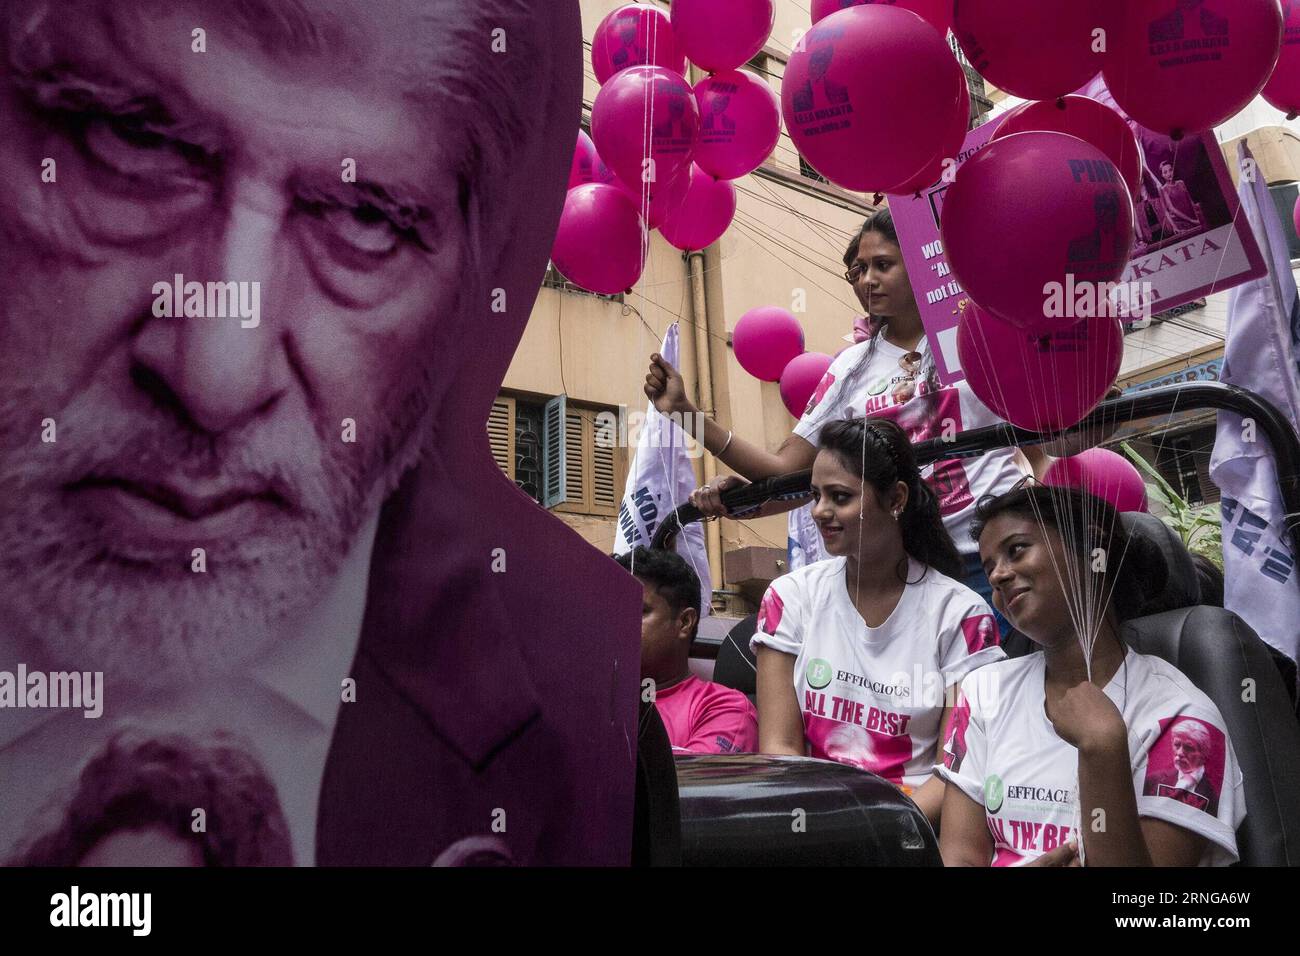 (160916) -- KOLKATA, 16. September 2016 -- Fans des Bollywood-Superstars Amitabh Bachchan feiern die Veröffentlichung seines neuesten Films Pink vor einem Theater in Kolkata, Indien, 16. September 2016. ) (lrz) INDIA-KOLKATA-BOLLYWOOD-FILM-RELEASE TumpaxMondal PUBLICATIONxNOTxINxCHN 160916 Kolkata 16. September 2016 Unterstützer von Bollywood Superstar Amitabh Bachchan feiern die Veröffentlichung seines neuesten Films Pink vor einem Theater in Kalkutta Indien 16. September 2016 Kolkata Bollywood dal Movie Release TumpTUxBLINN Stockfoto